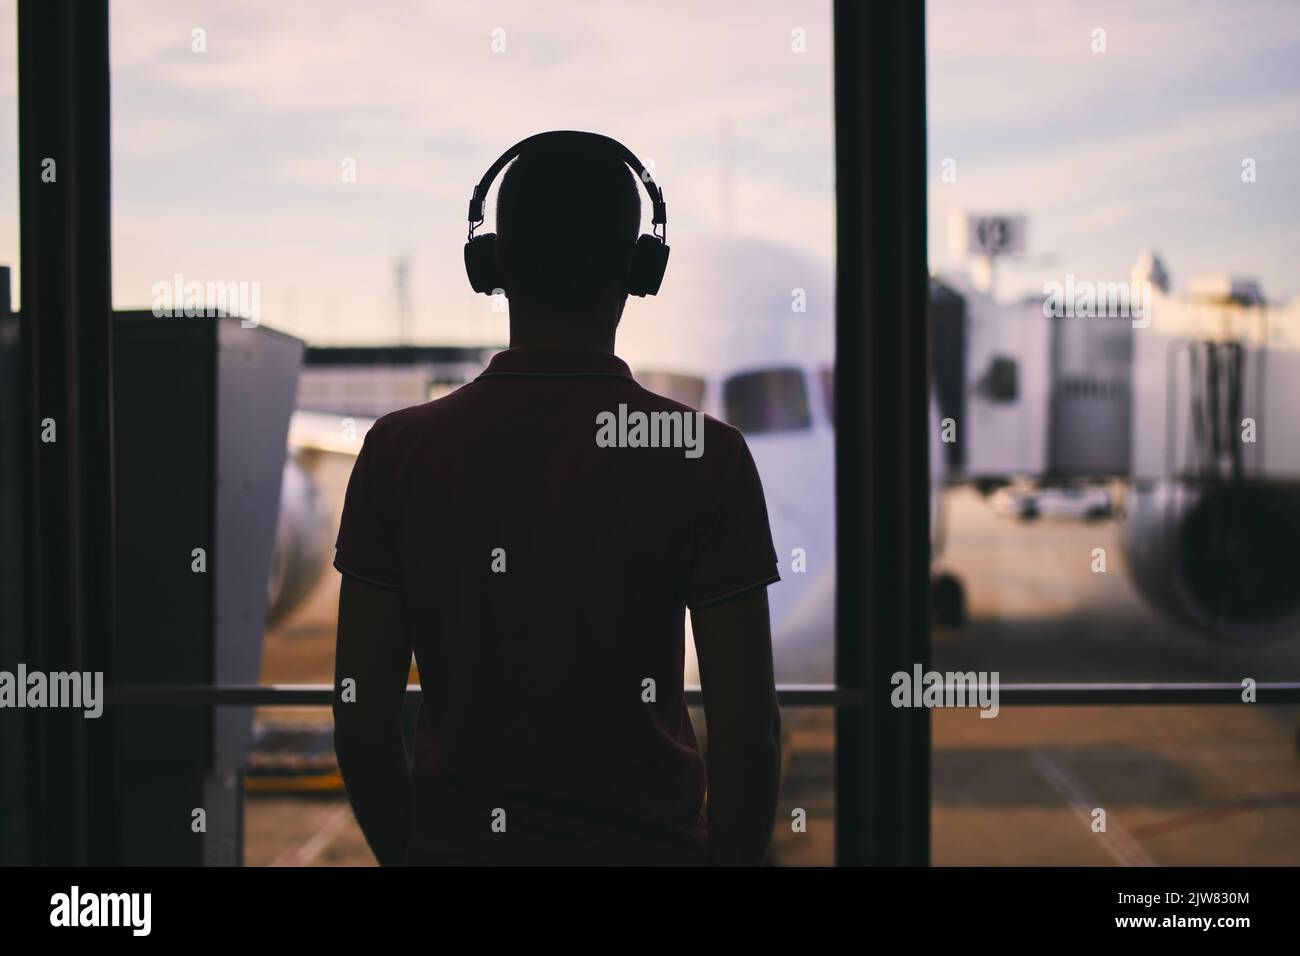 Silhouette eines Mannes mit Kopfhörern, während er auf den Flug wartet. Reisende, die vom Flughafenterminal aus schauen, bevor sie zum Flugzeug steigen. Stockfoto